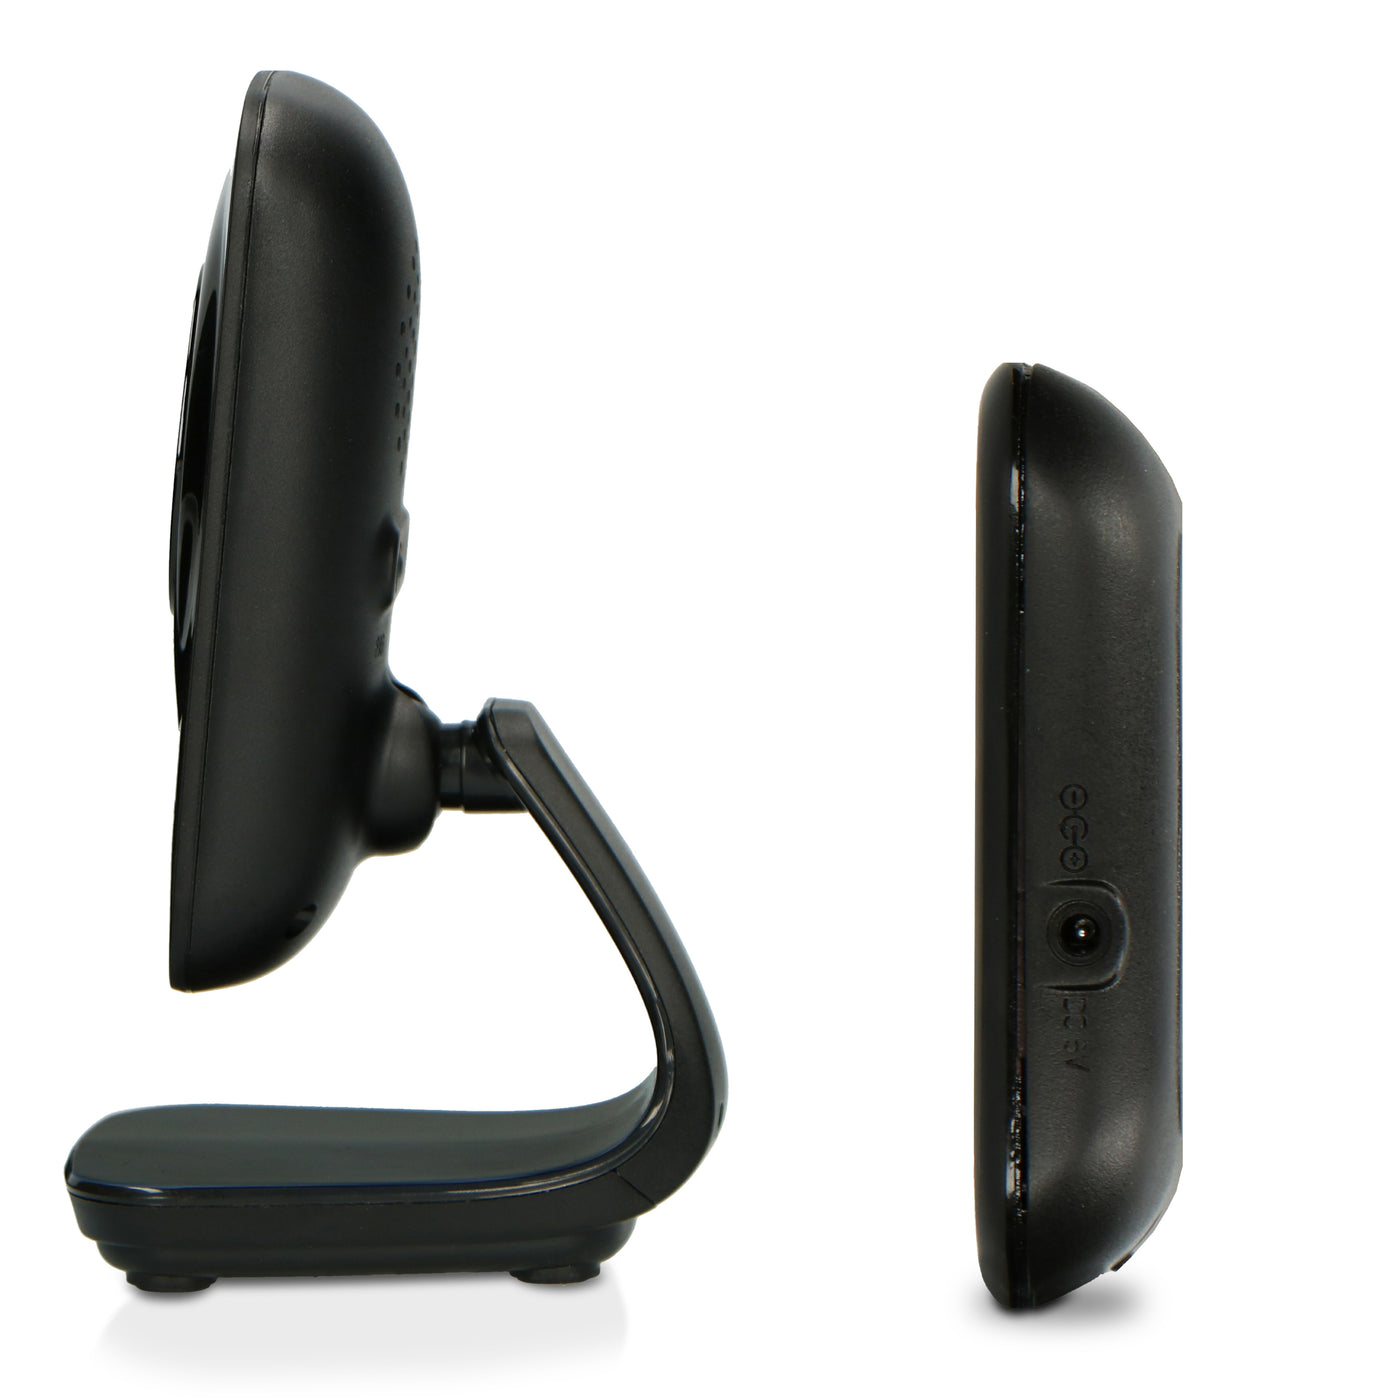 Alecto DVM149 - Babyphone avec caméra et écran couleur 4.3", noir